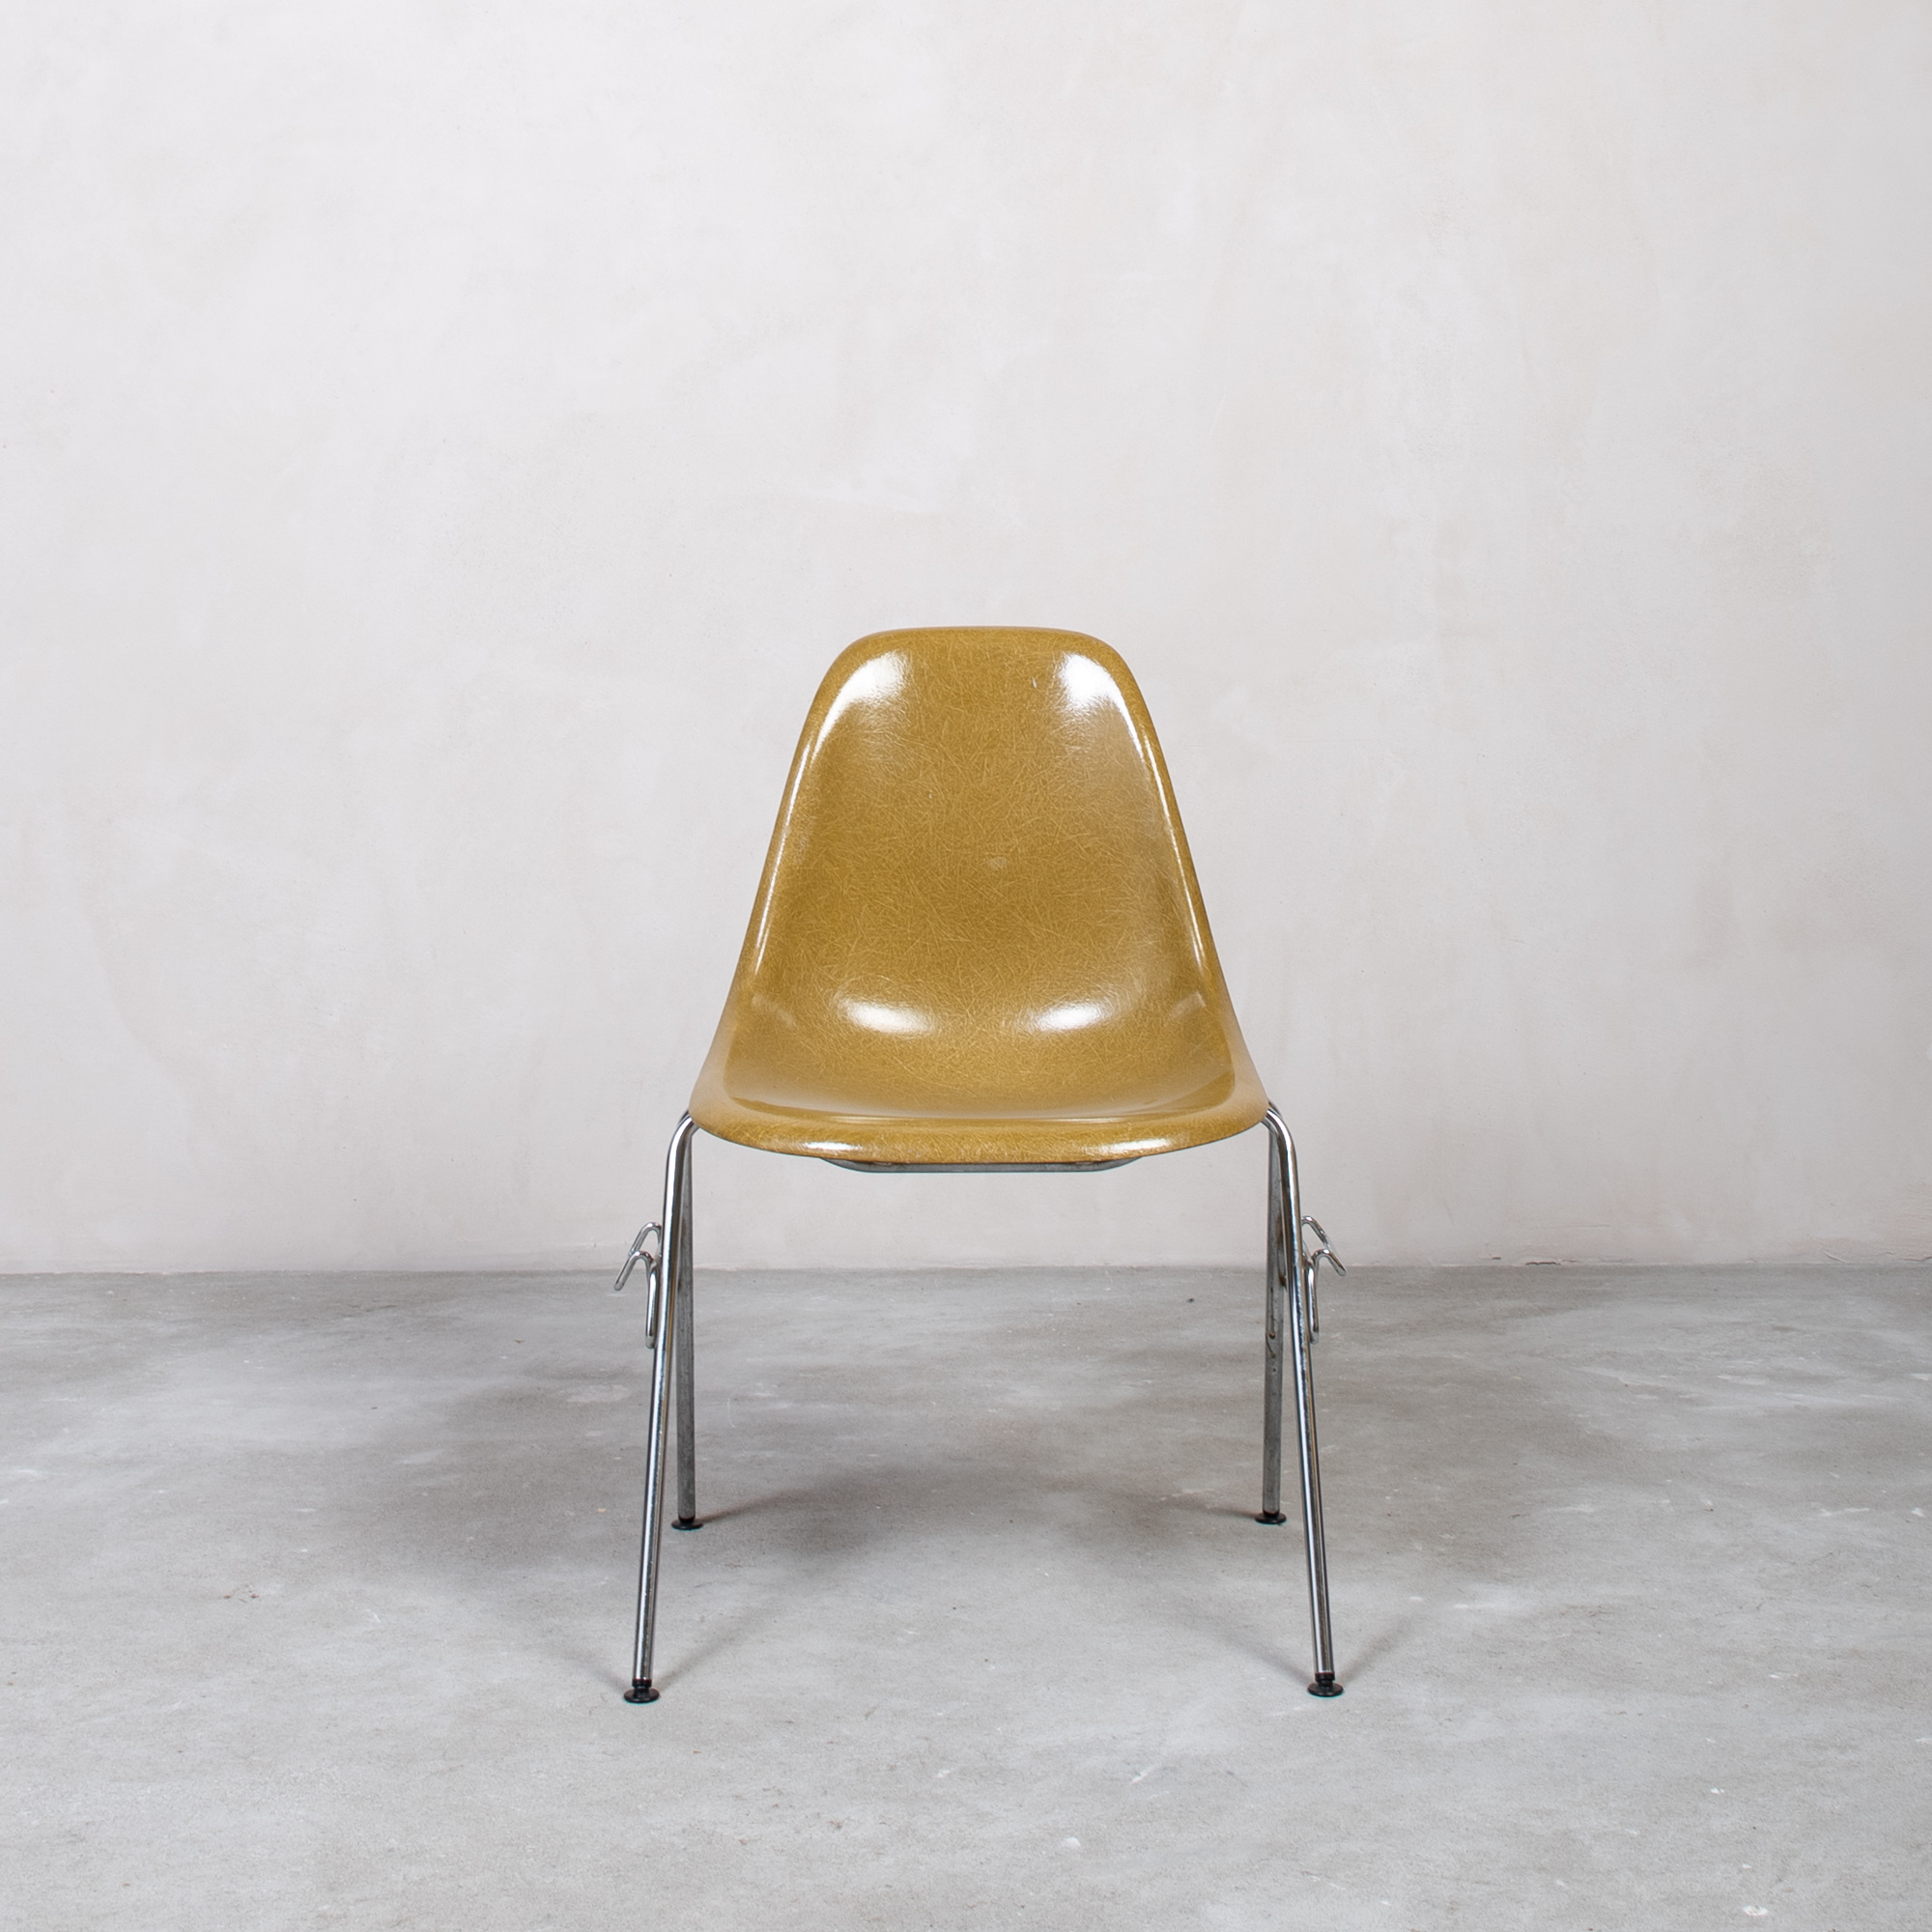 Eames Fiberglass Side Chair by Herman Miller Khaki 1